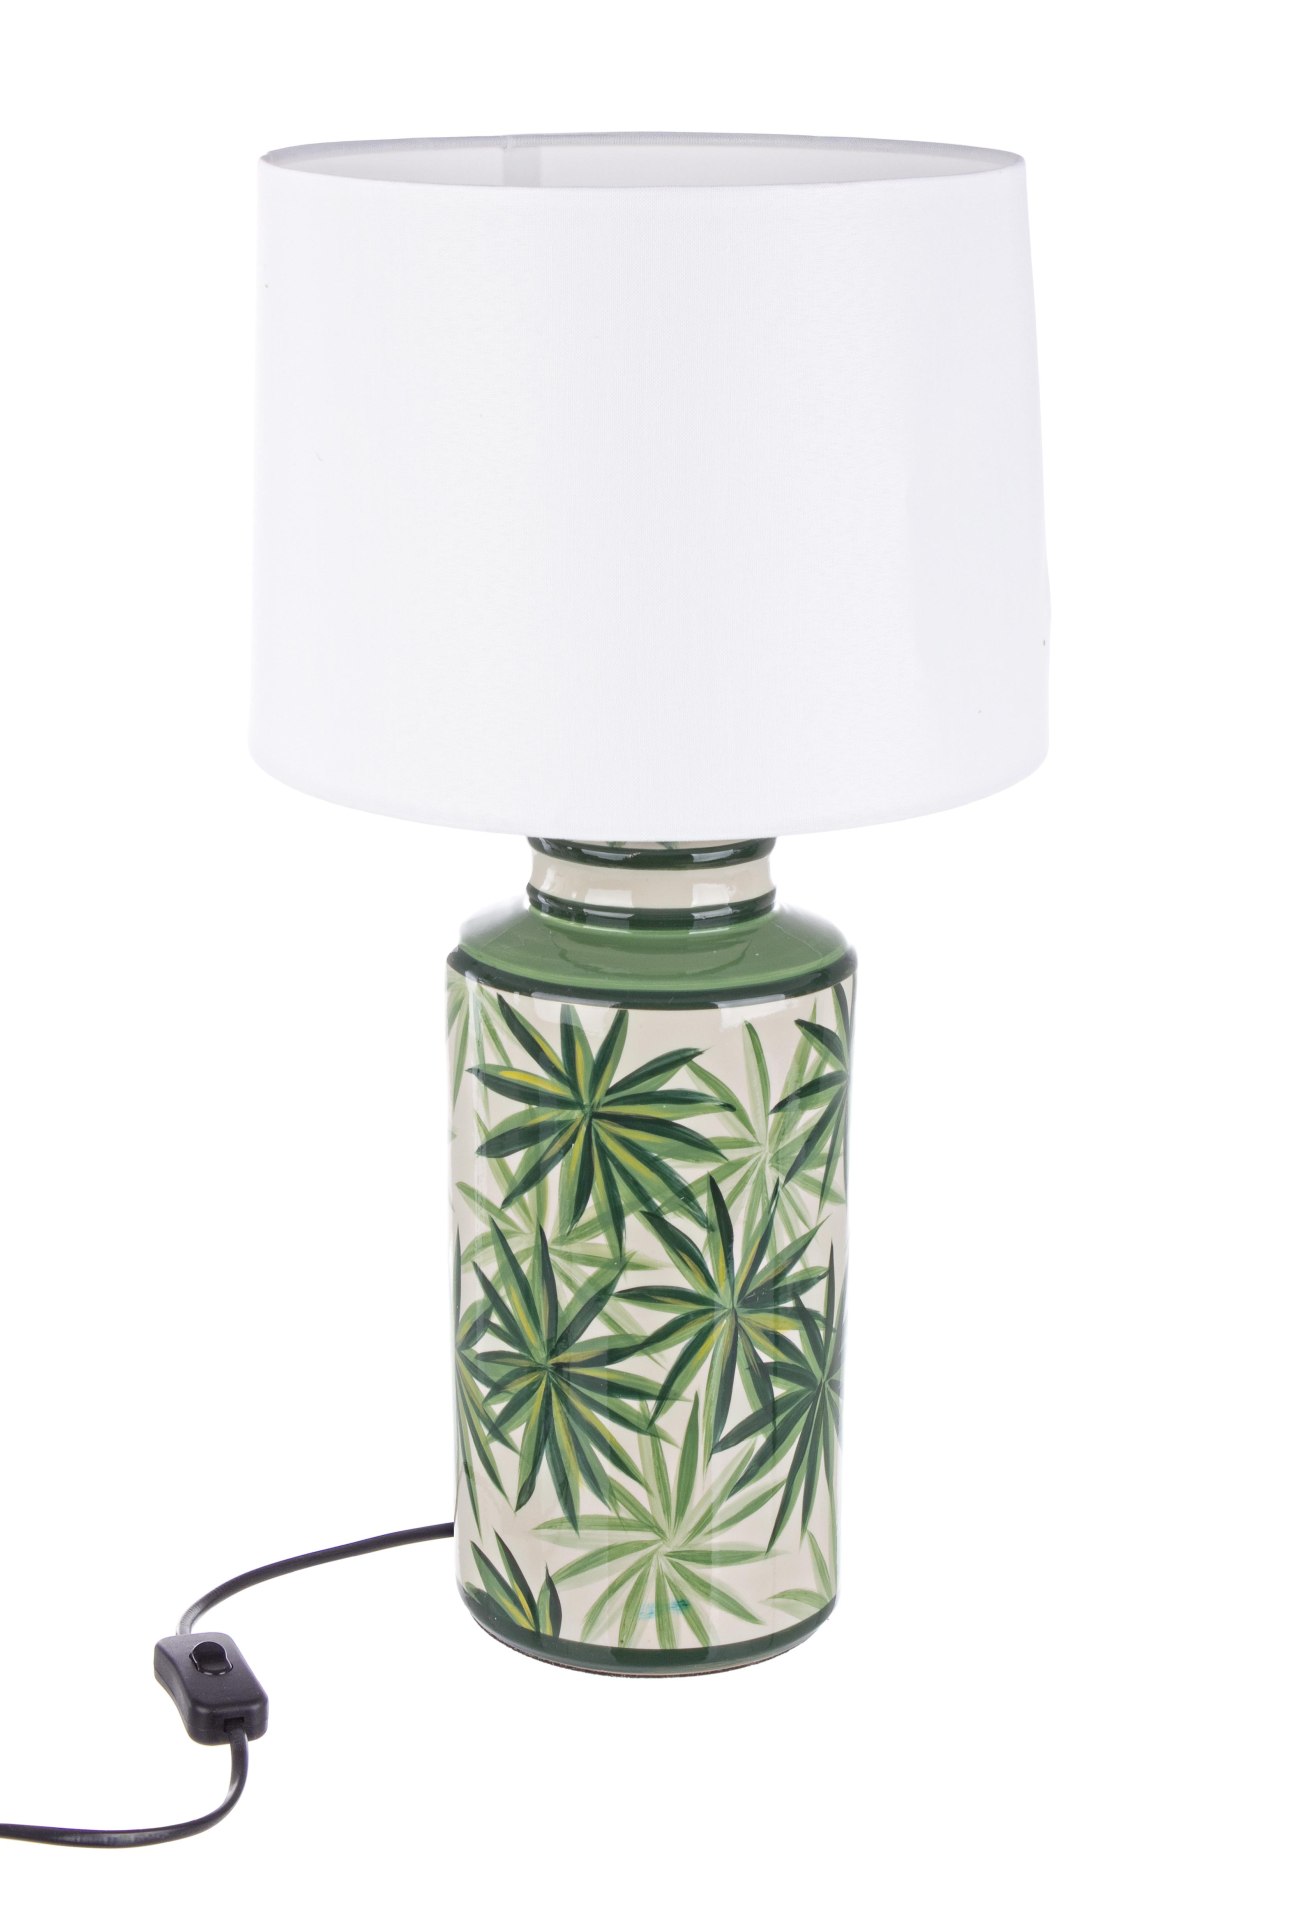 Die Tischleuchte Tropic überzeugt mit ihrem klassischen Design. Gefertigt wurde sie aus Porzellan, welches einen grünen Farbton besitzt. Die Lampenschirme ist aus Polyester und hat eine weiße Farbe. Die Lampe besitzt eine Höhe von 63 cm.